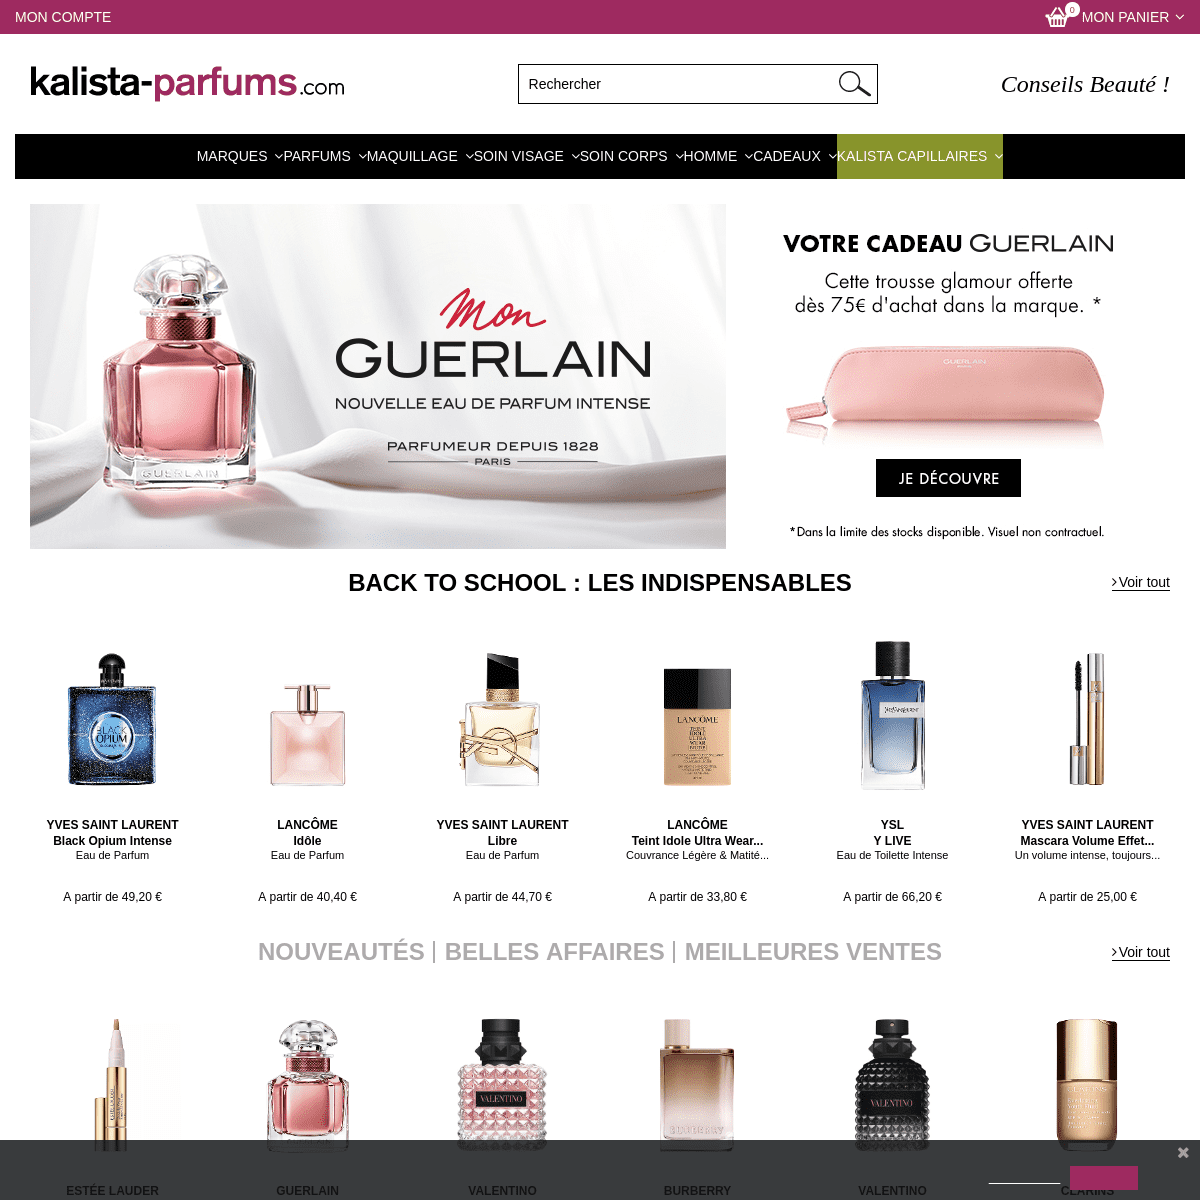 Kalista Parfums : parfums, maquillages et soins des plus grandes marques de la parfumerie